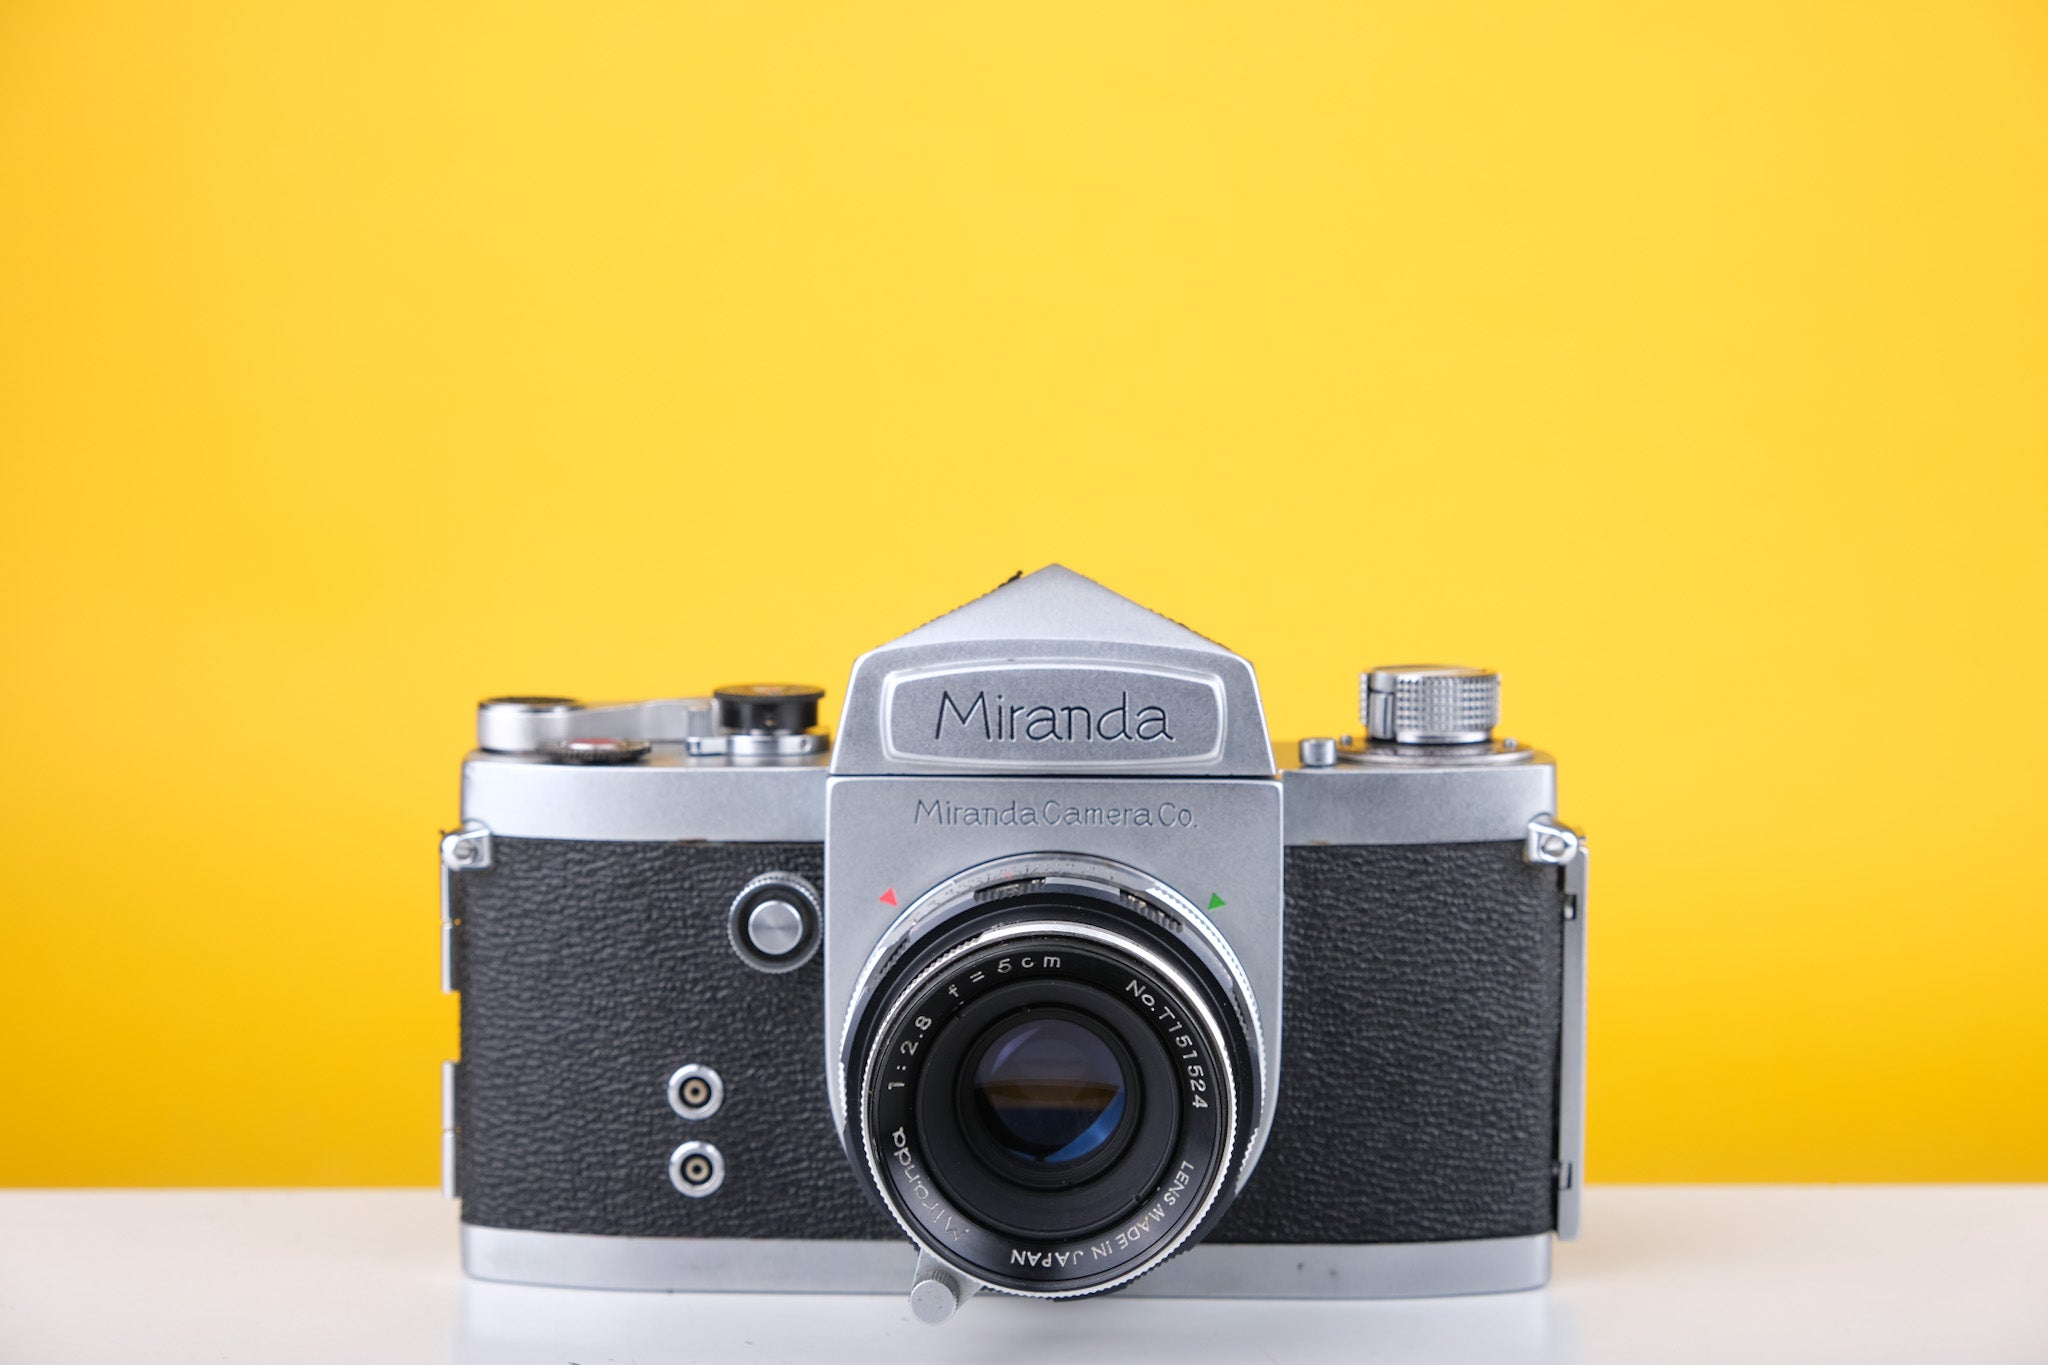 Miranda D 35mm SLR Film Camera with 50mm f2.8 Lens